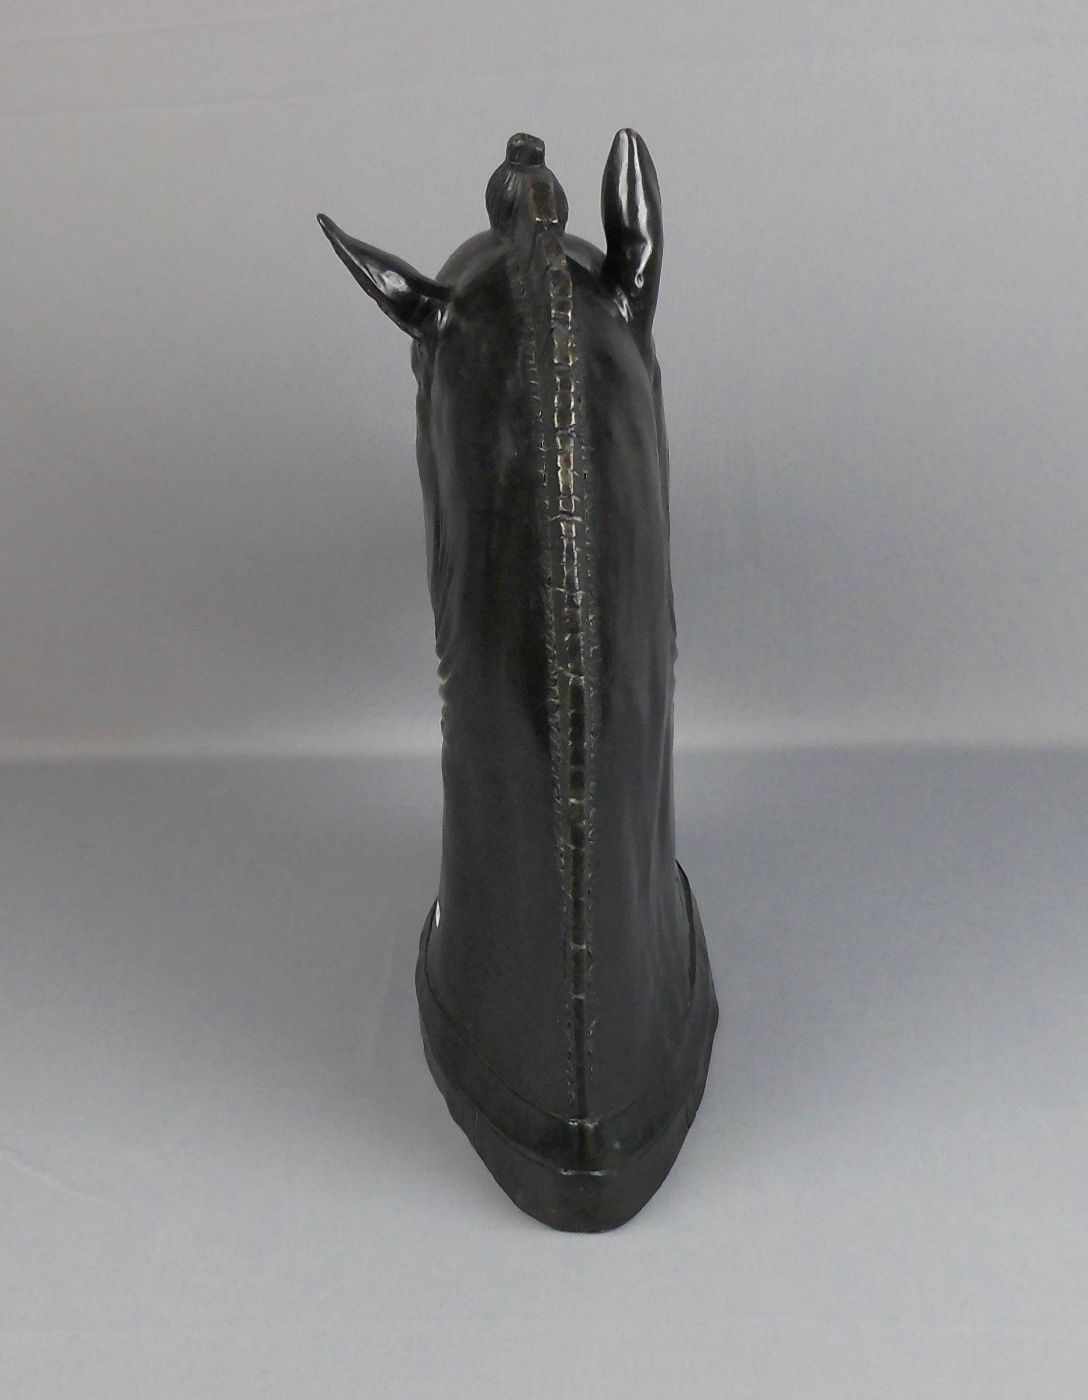 ANONYMUS (20. Jh.), Skulptur / sculpture: "Pferdekopf", Bronze, dunkelbraun patiniert und - Bild 3 aus 4